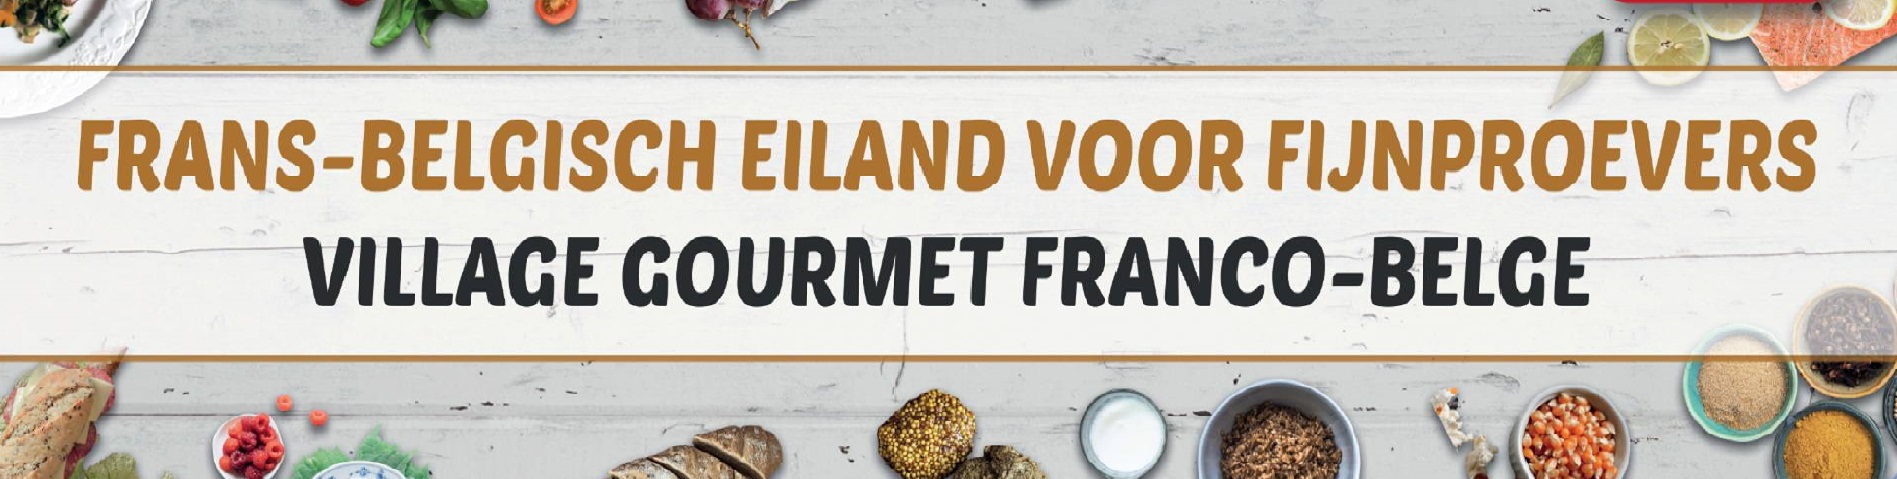 Village Gourmet franco-belge